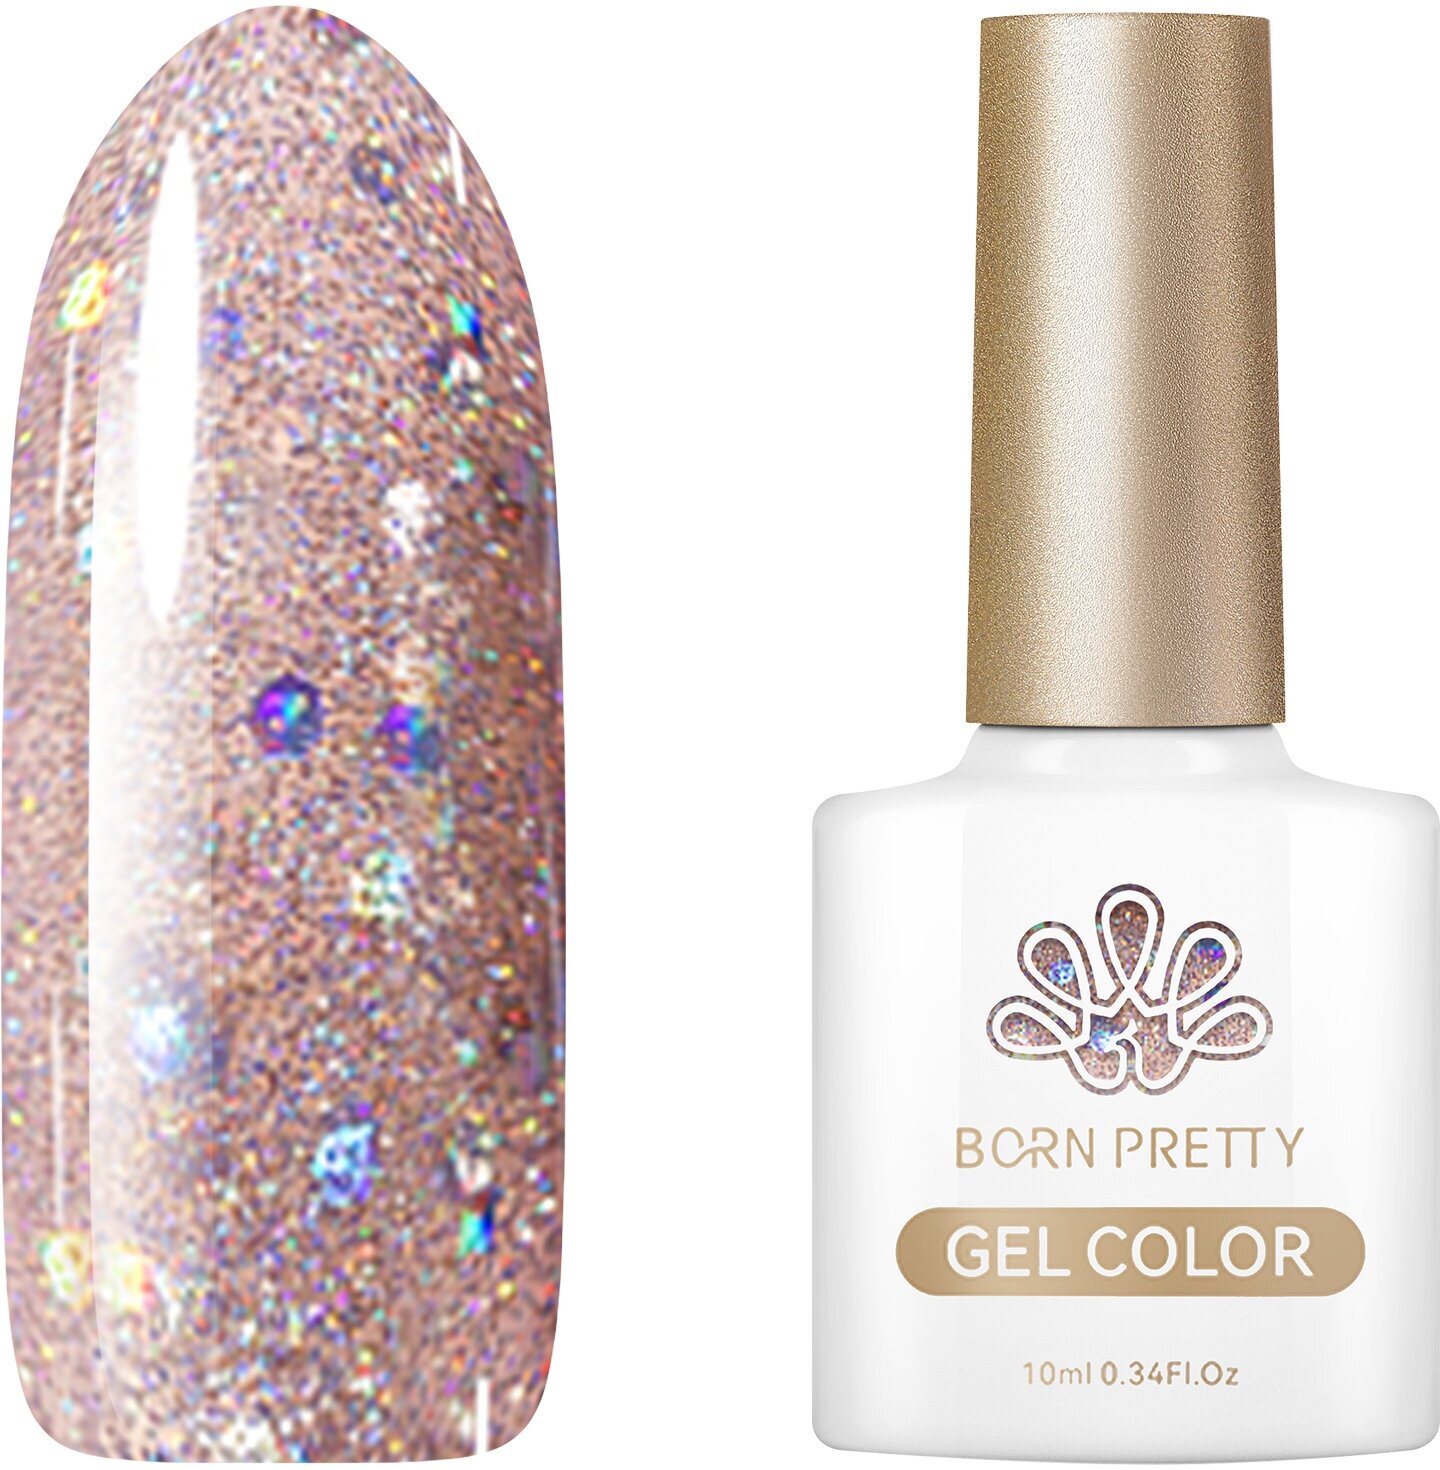 Гель-лак для ногтей Born Pretty "Color gel" CG104 55845-104, 10 мл